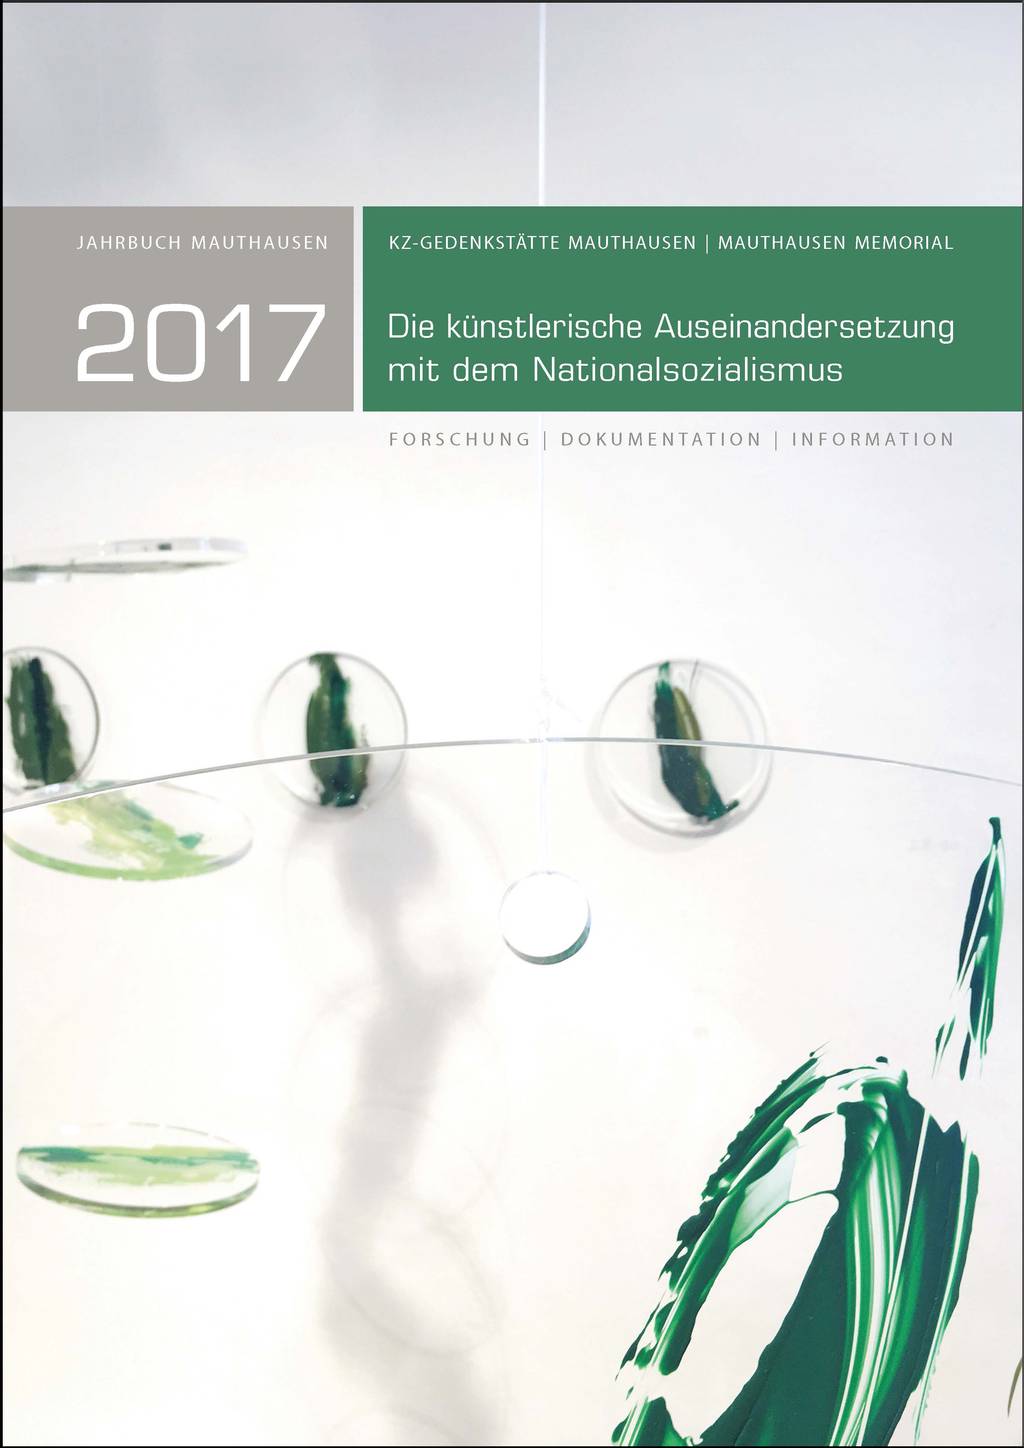 Jahrbuch 2017 der KZ-Gedenkstätte Mauthausen